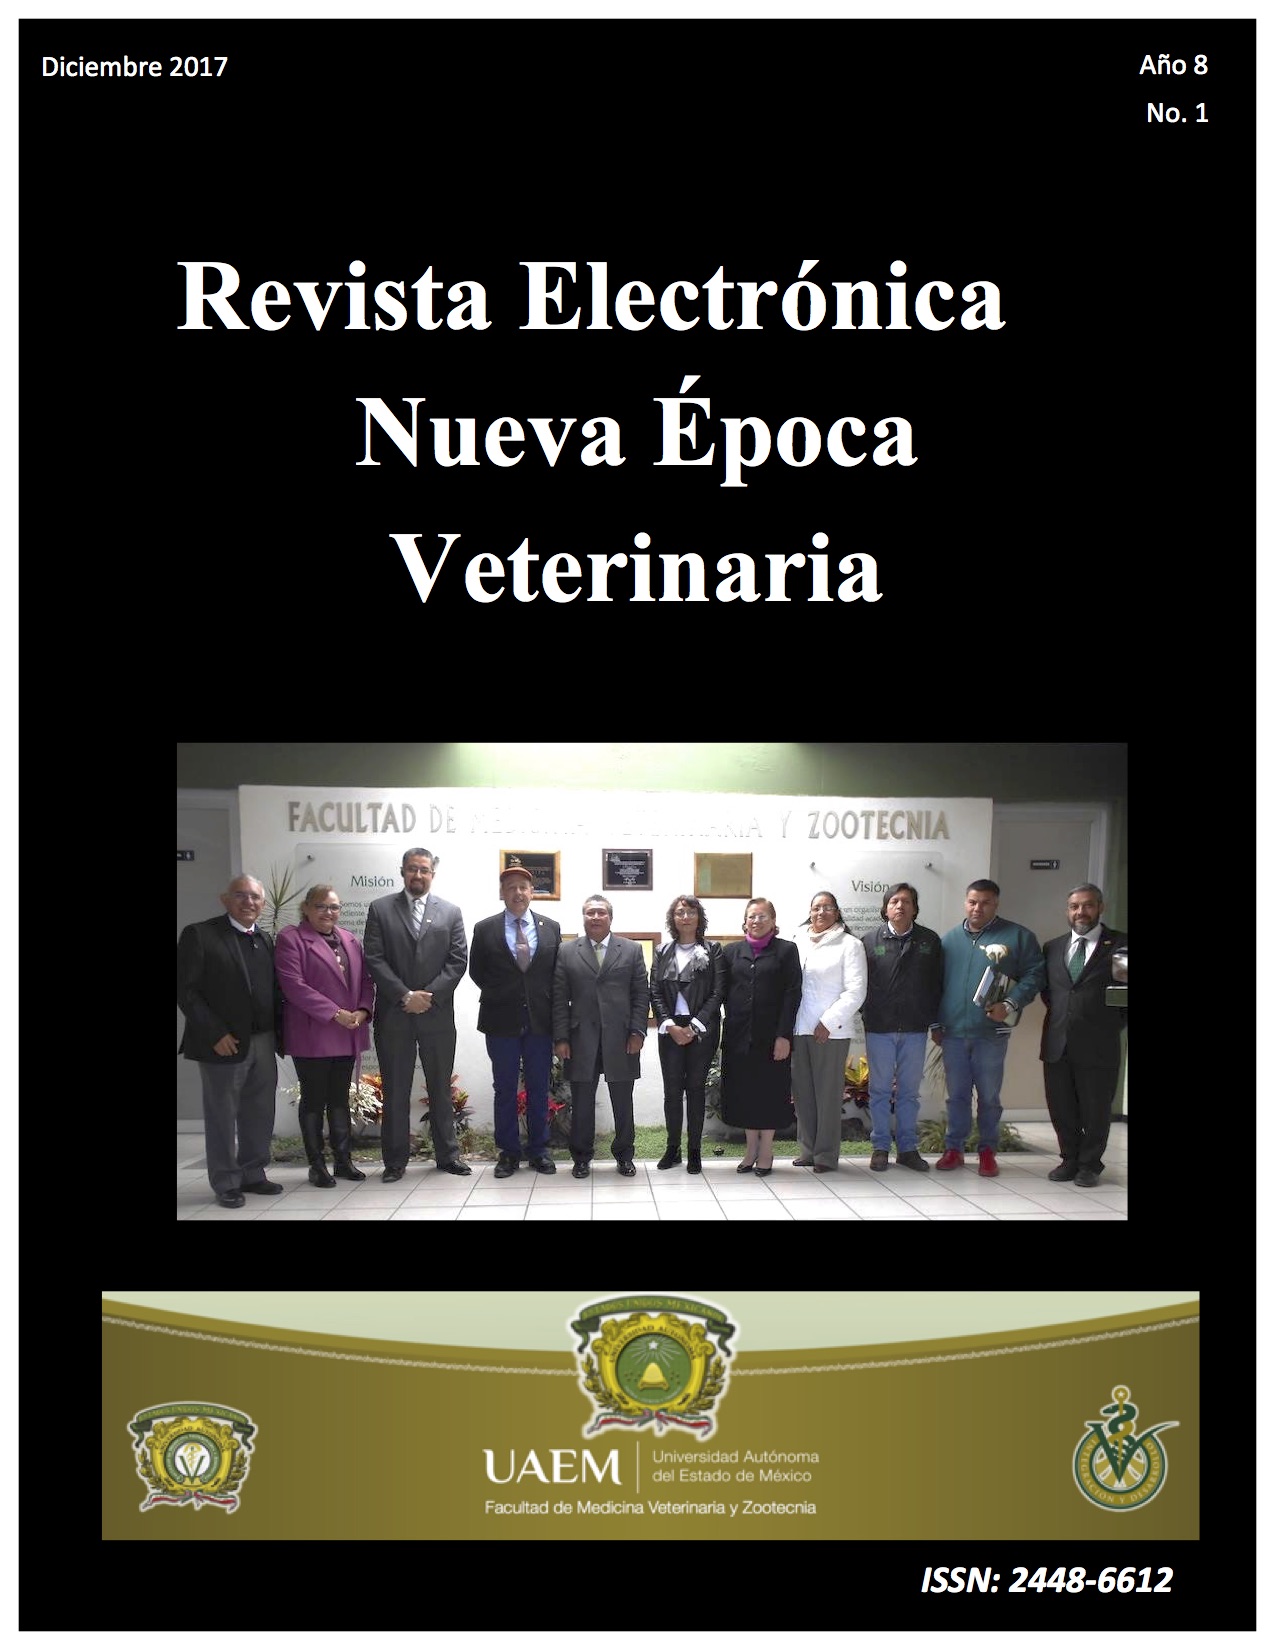 Revista Electrónica Nueva Época Veterinaria, Año 8 - No. 1, Diciembre 2017